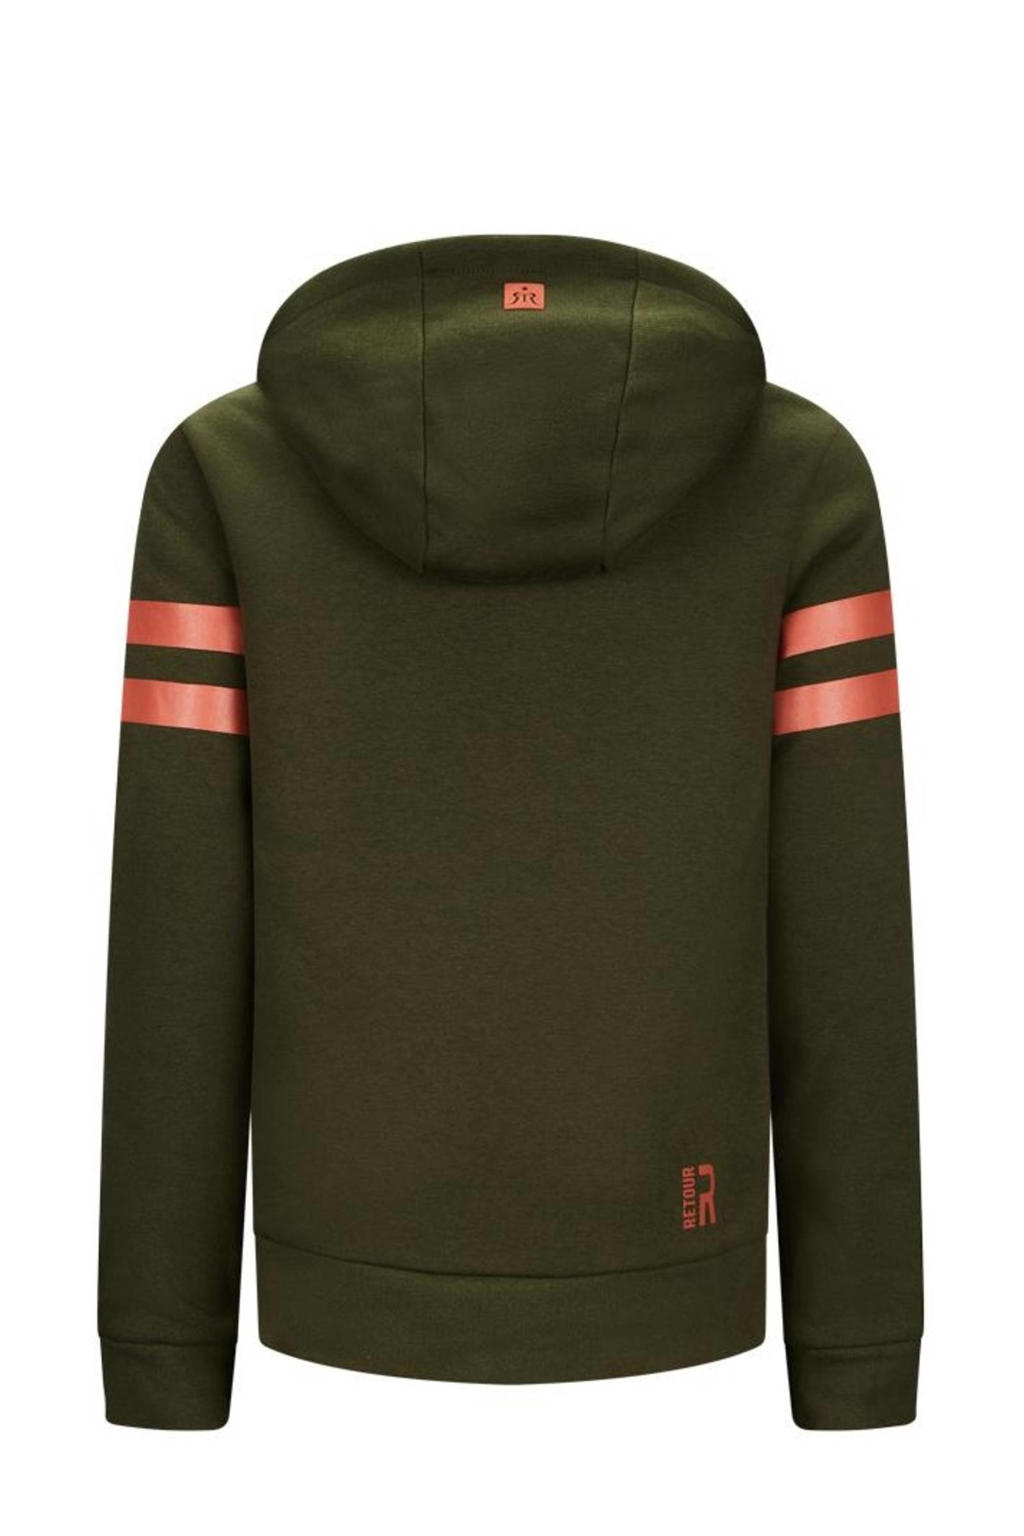 Retour Denim hoodie Florian met logo donker olijfgroen